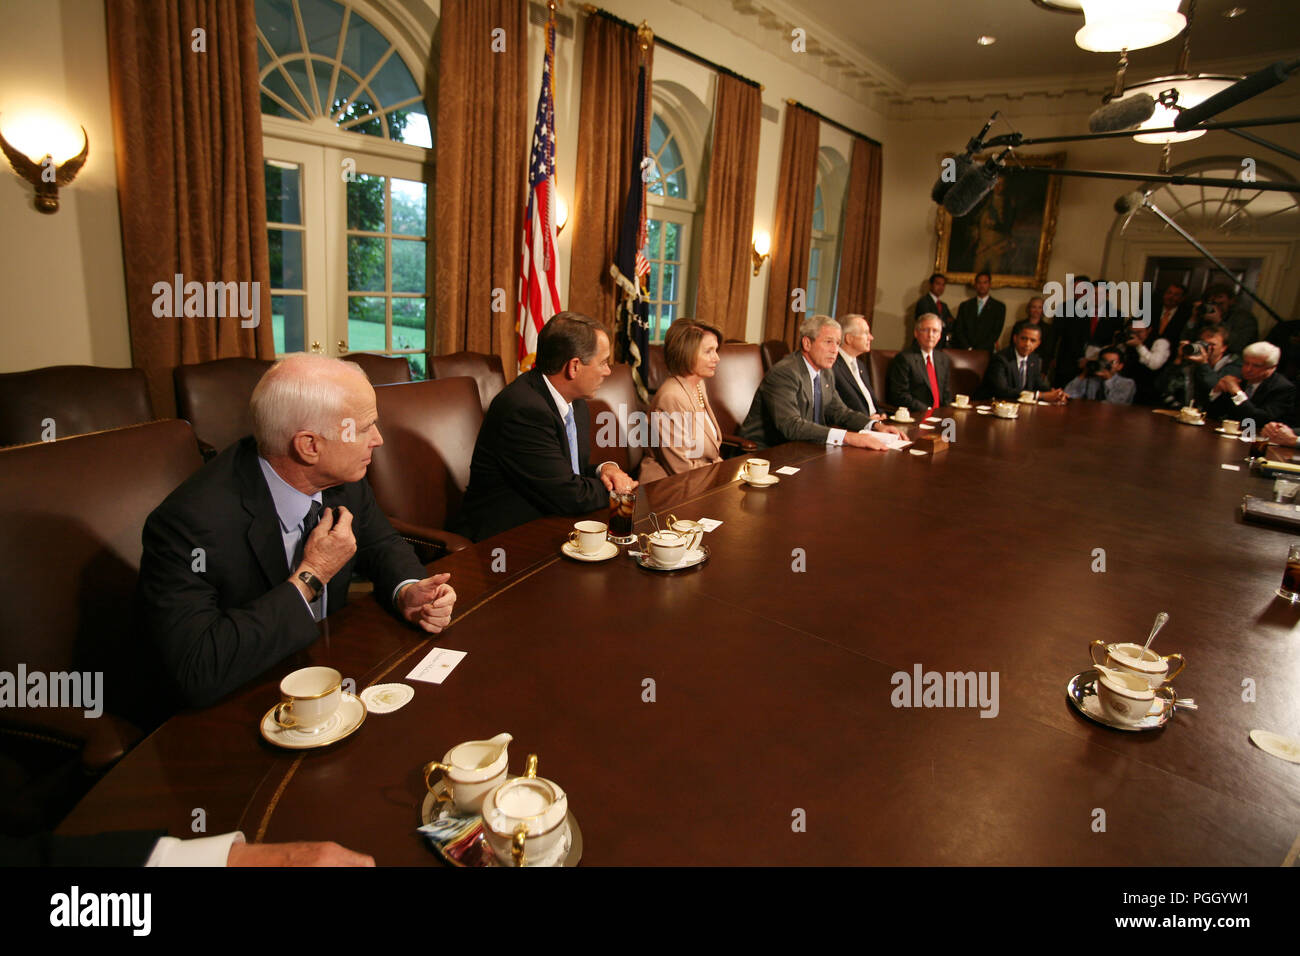 Le Président George Bush : parle à la réunion avec les membres des deux partis et bicamérale du Congrès au sujet de la crise économique ; la participation de sénateurs Barack Obama et John McCain. Banque D'Images